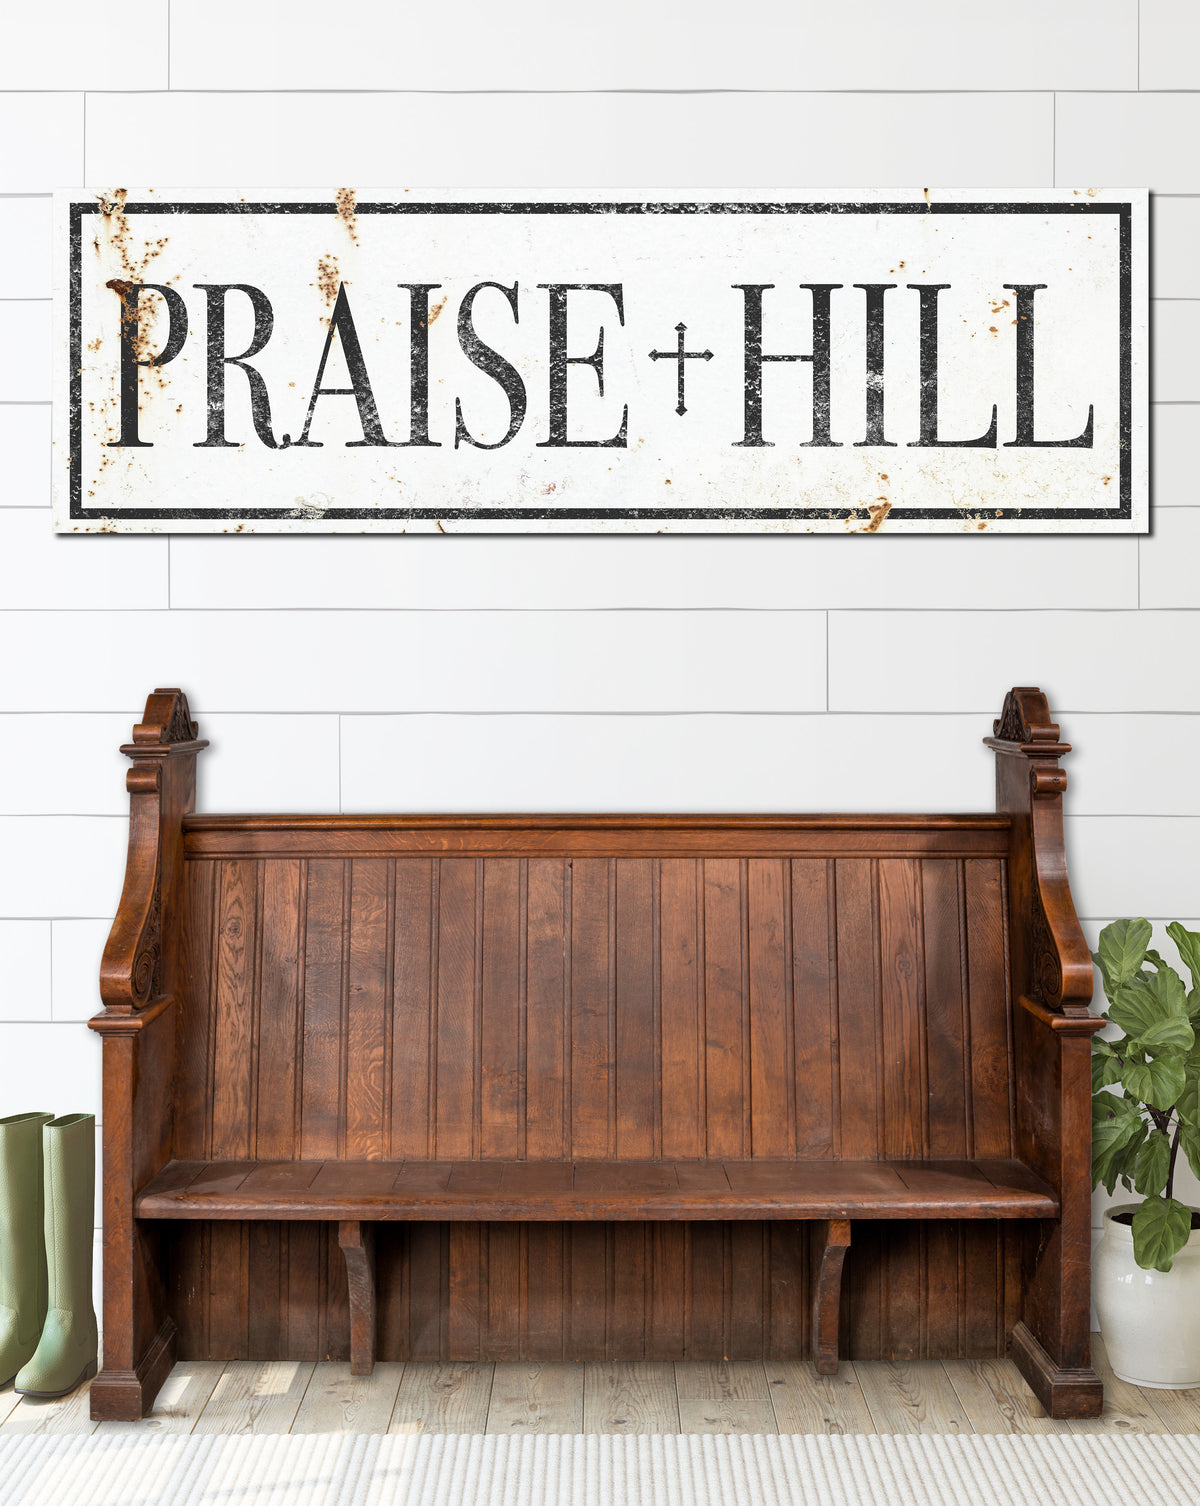 Praise Hill White Farmhouse Wall Art Canvas Church Sign